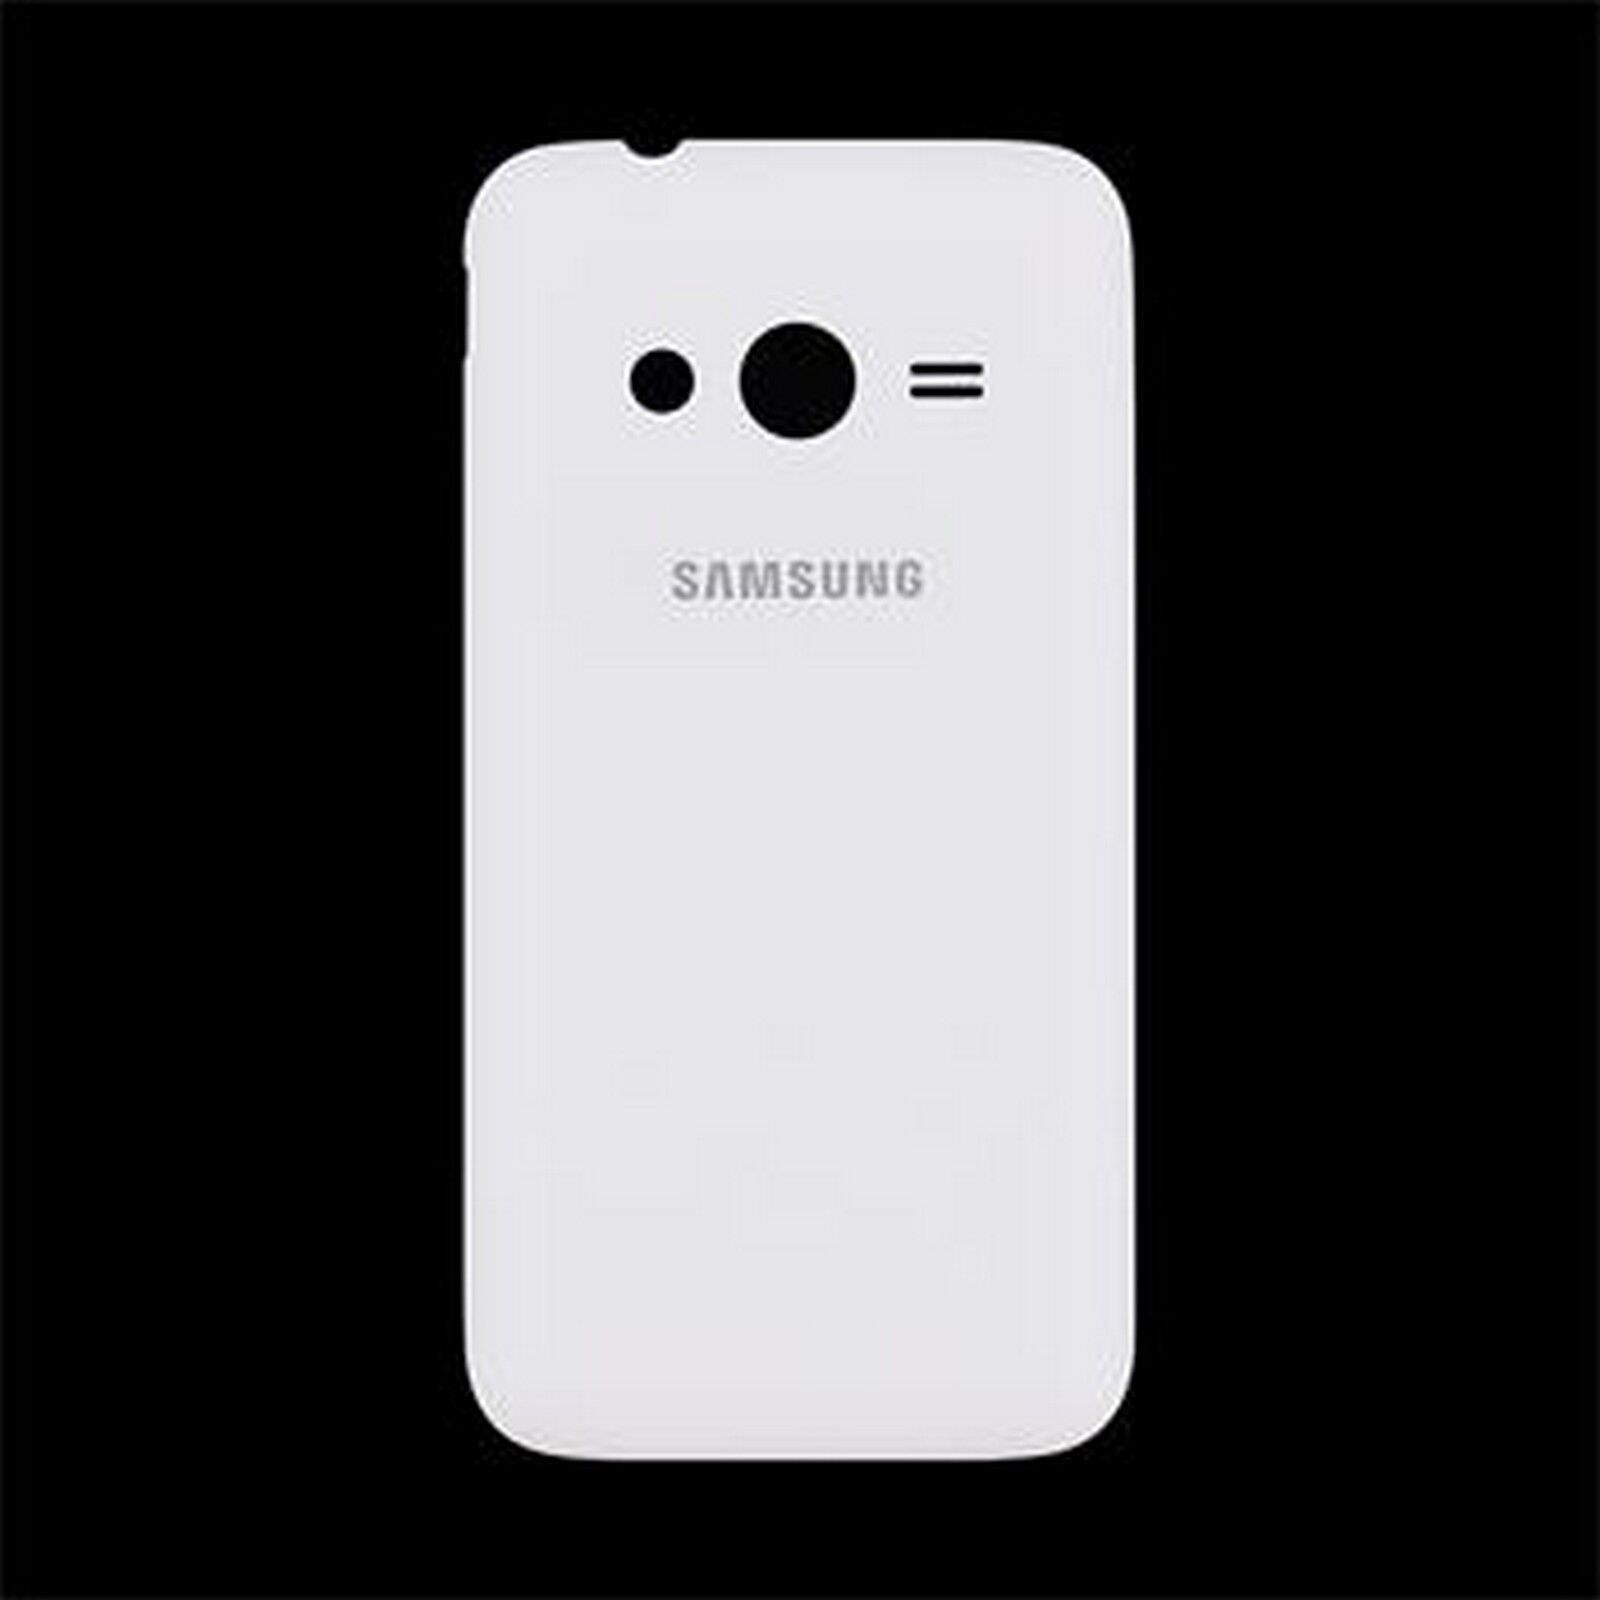 Samsung Copri batteria ricambio originale bianco per Galaxy Trend 2 Lite G318